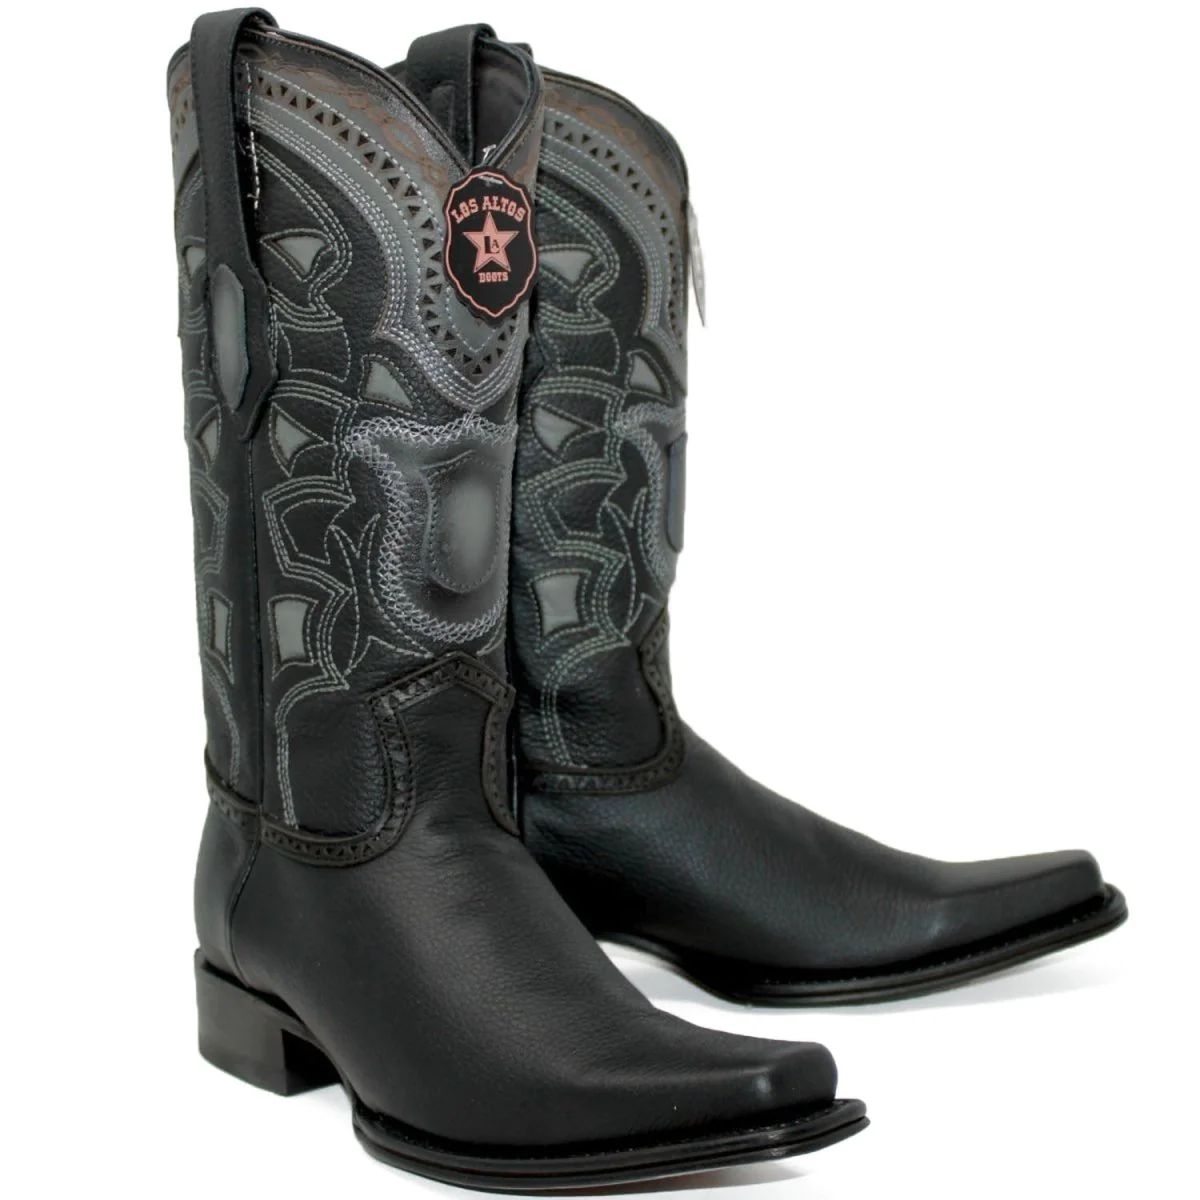 Botas de Cuero Los Altos Boots $239.99 en varios colores con ENVIO GRATIS. Para comprar llama al 323-312-3317 o haz click en este link: caballobronco.com/collections/lo… #caballobronco #botasvaqueras #westernboots #cowboyboots #losaltosboots #botaslosaltos #losaltosbootsonsale #botasnegras